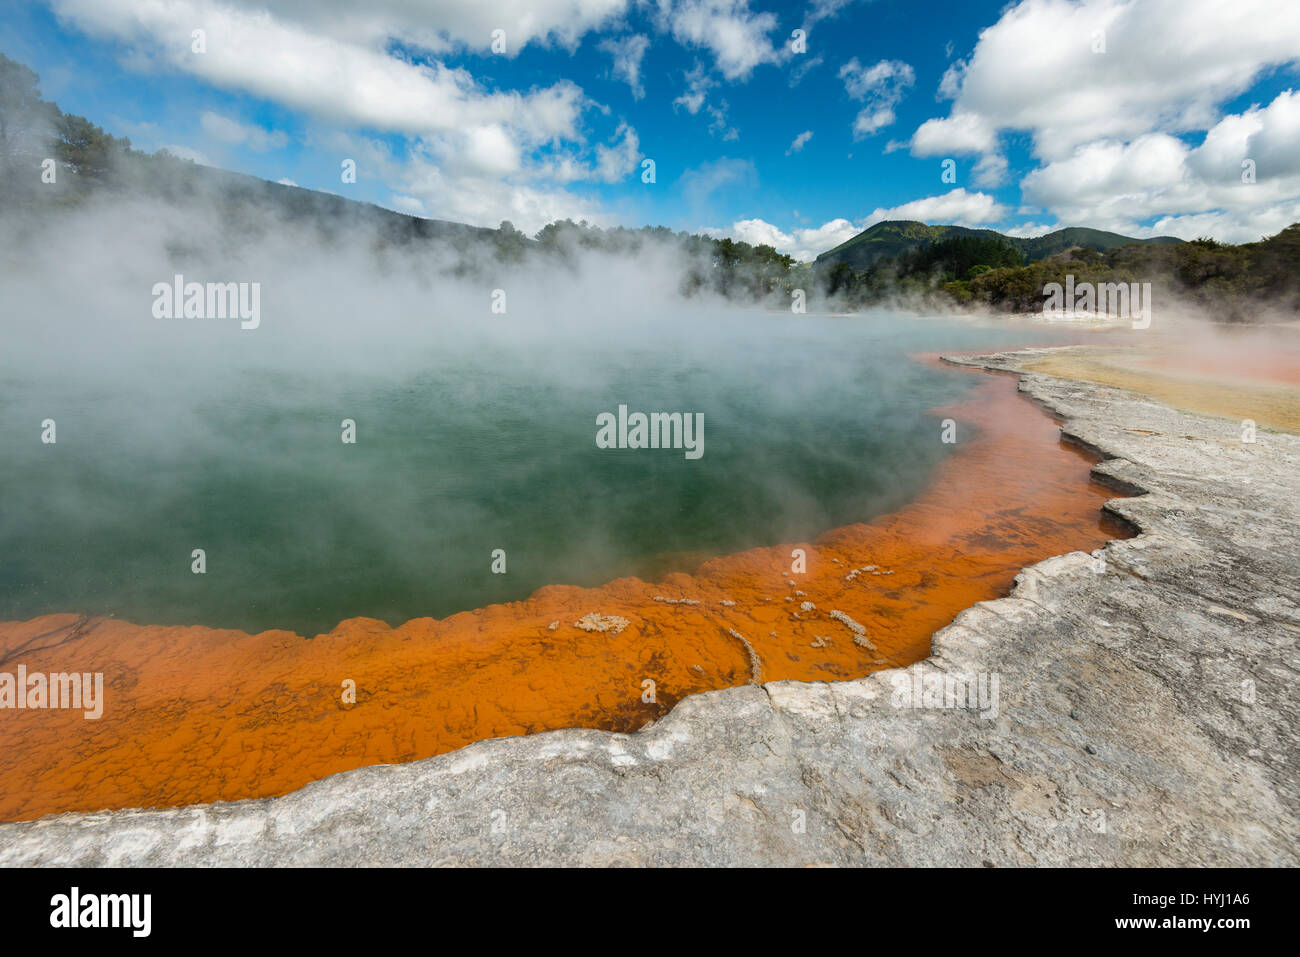 Champagne Pool, hot thermal spring, Waiotapu, Waiotapu, Roturoa, North Island, New Zealand Stock Photo